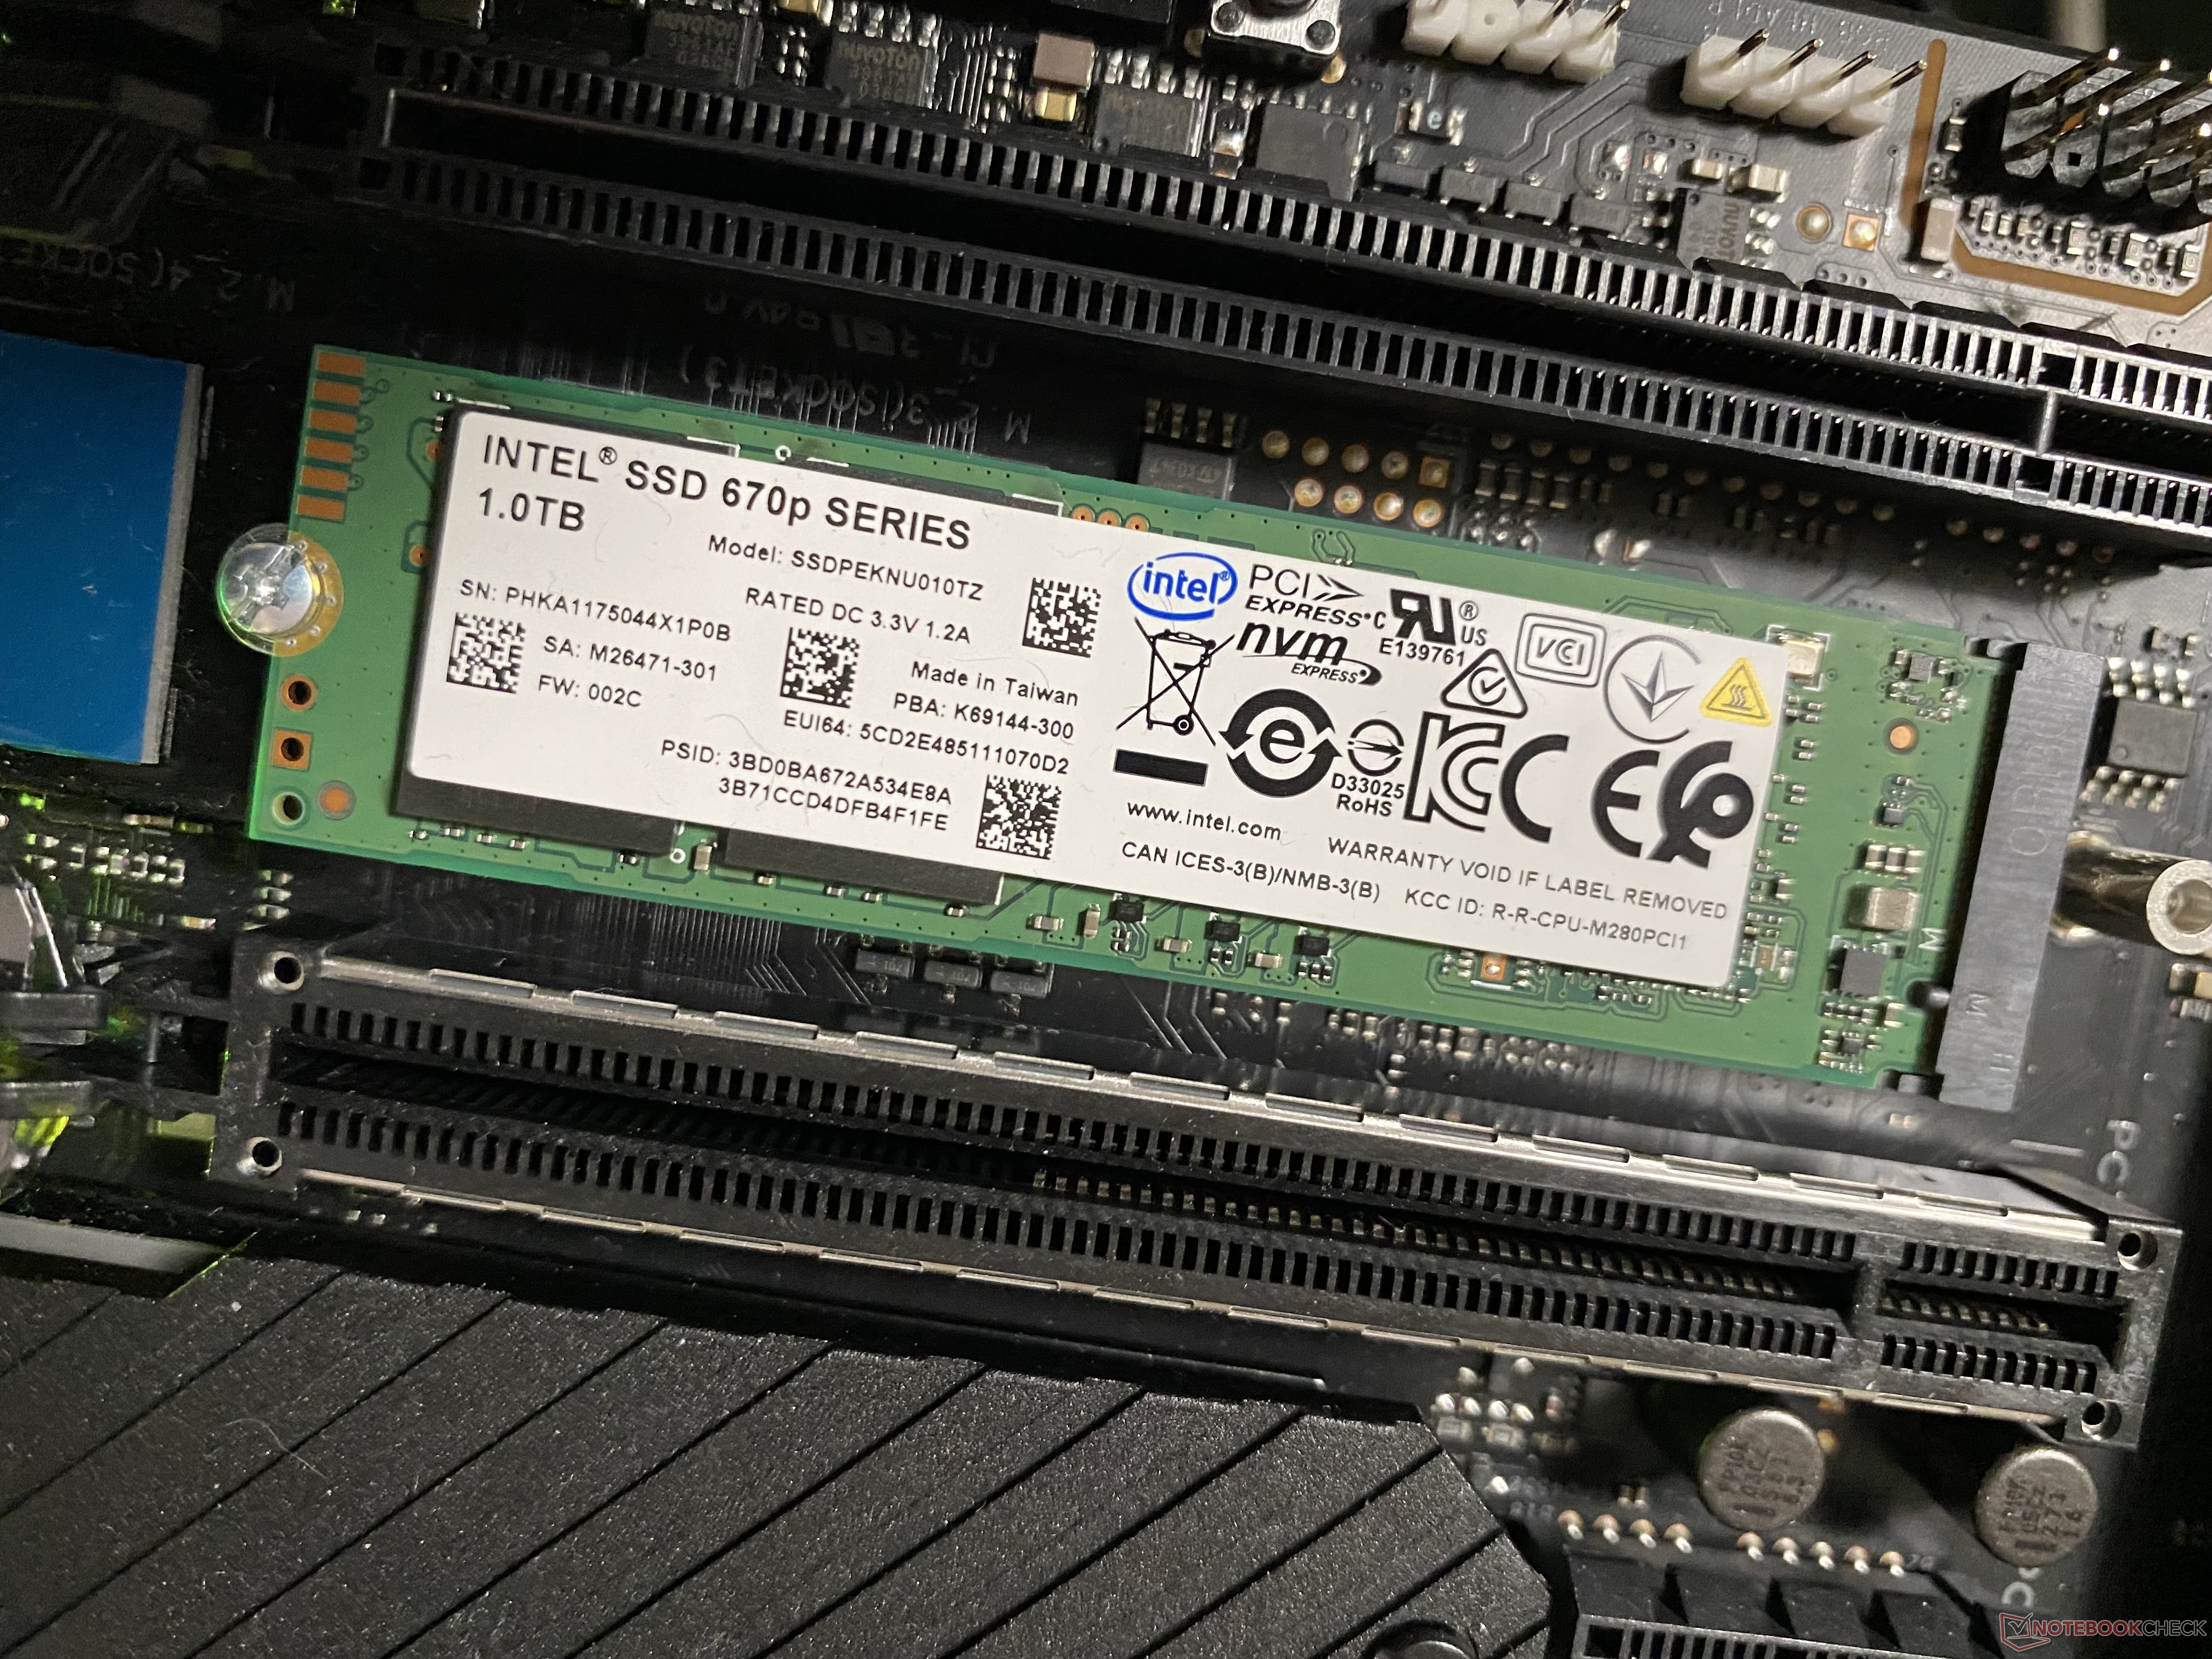 Intel SSD 670p SSDPEKNU010TZ SSD Benchmarks - NotebookCheck.net Tech